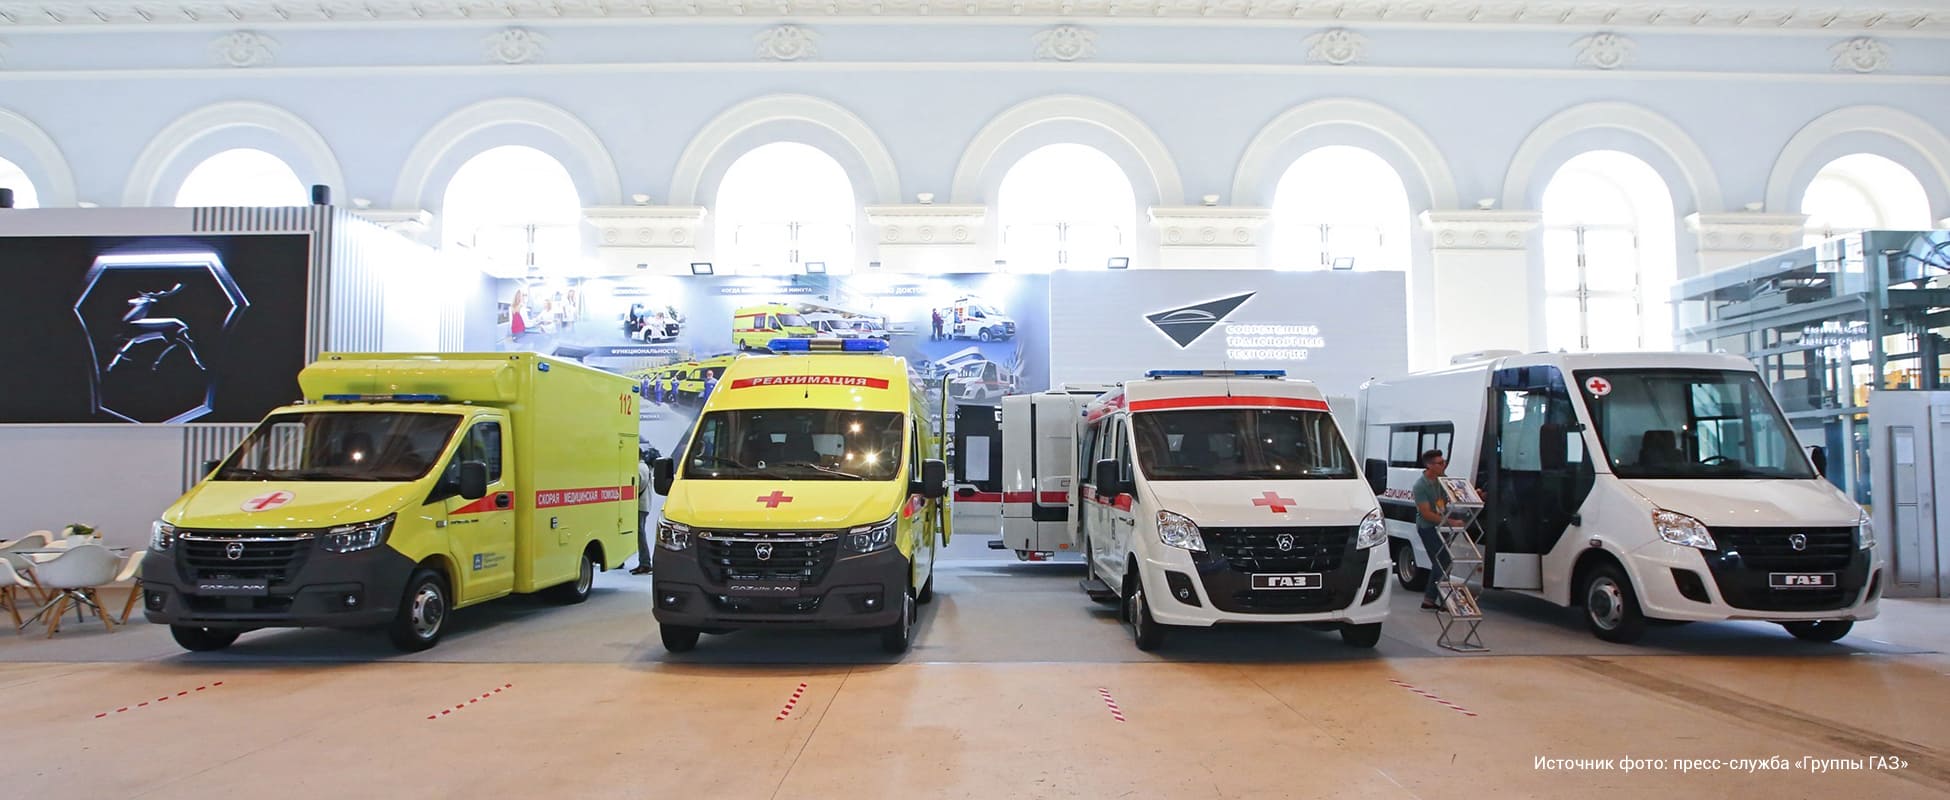 Медицинские автомобили Форвард В Москве на форуме Здоровье нации 2021